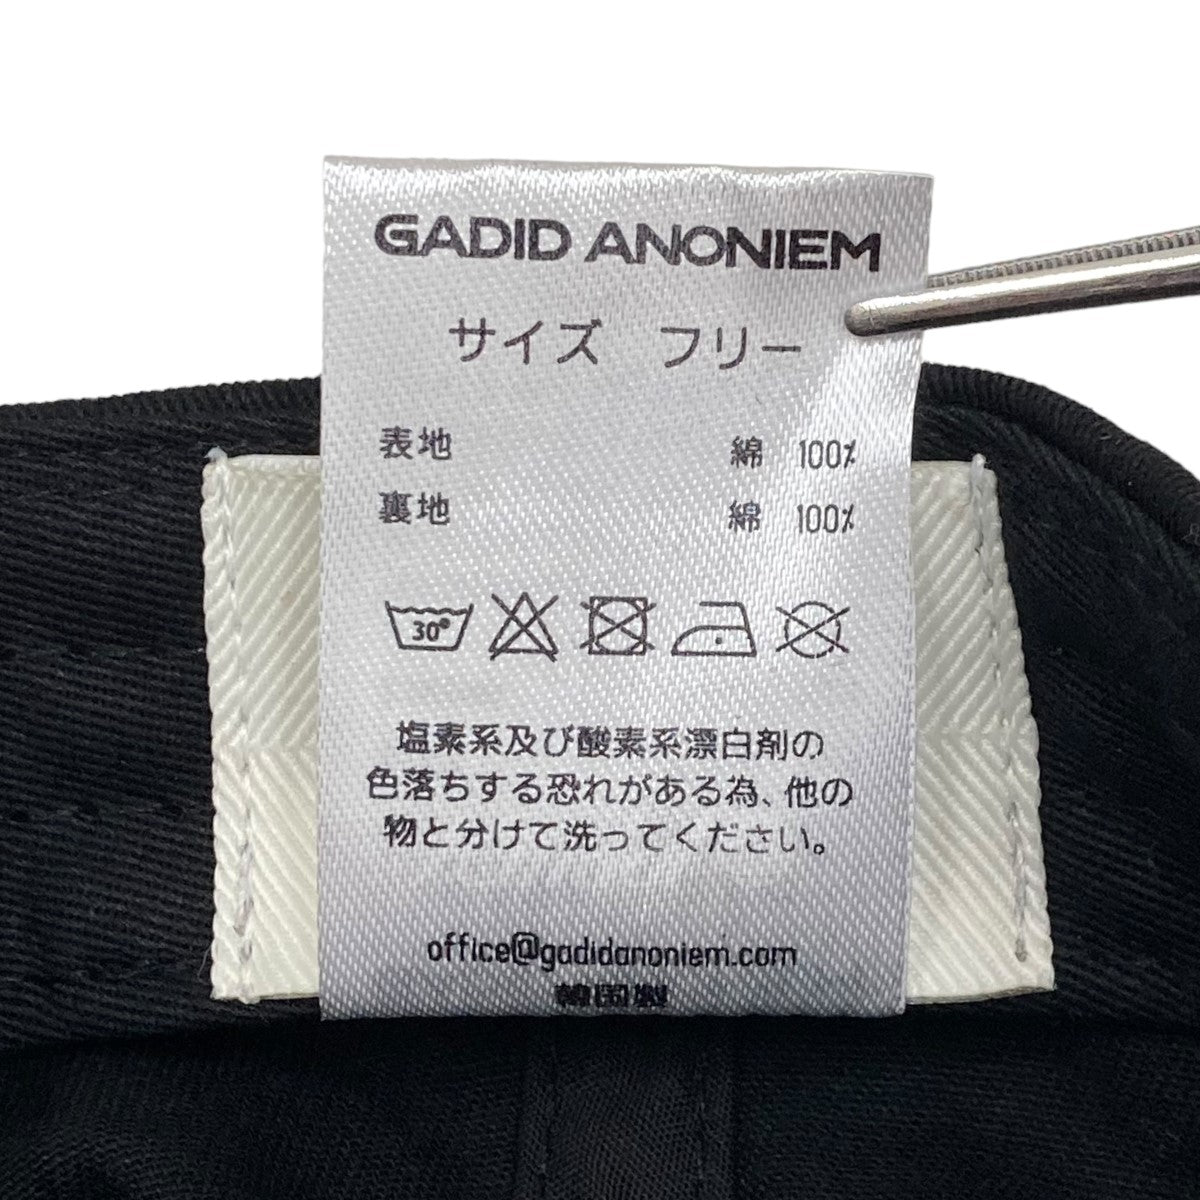 GADID ANONIEM(ガディッドアノニム) JUDE キャップ ブラック サイズ 12 